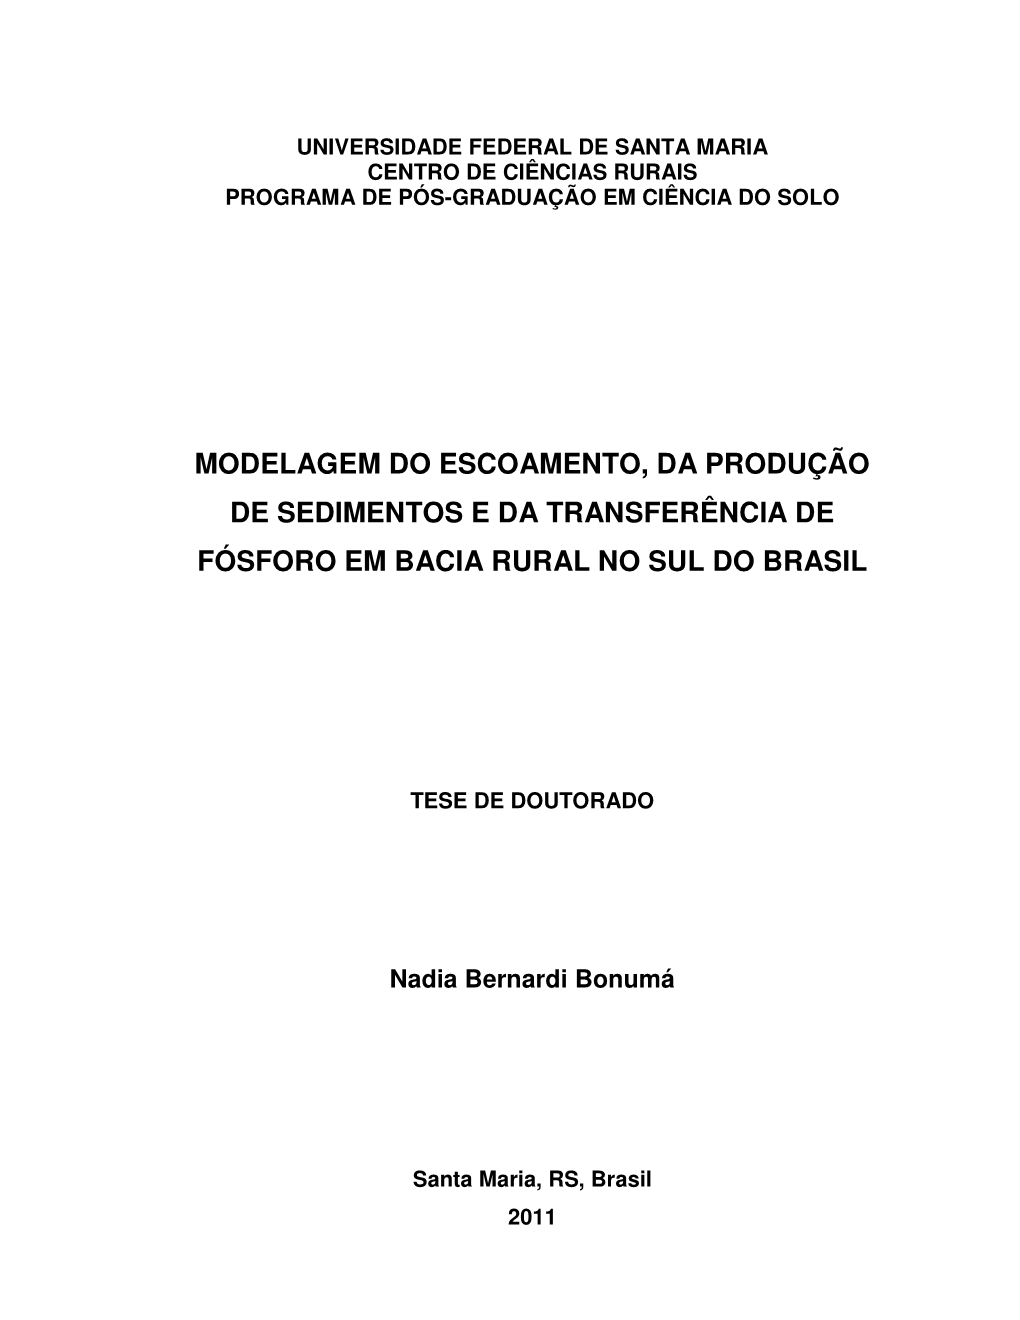 Modelagem Do Escoamento, Da Produção De Sedimentos E Da Transferência De Fósforo Em Bacia Rural No Sul Do Brasil